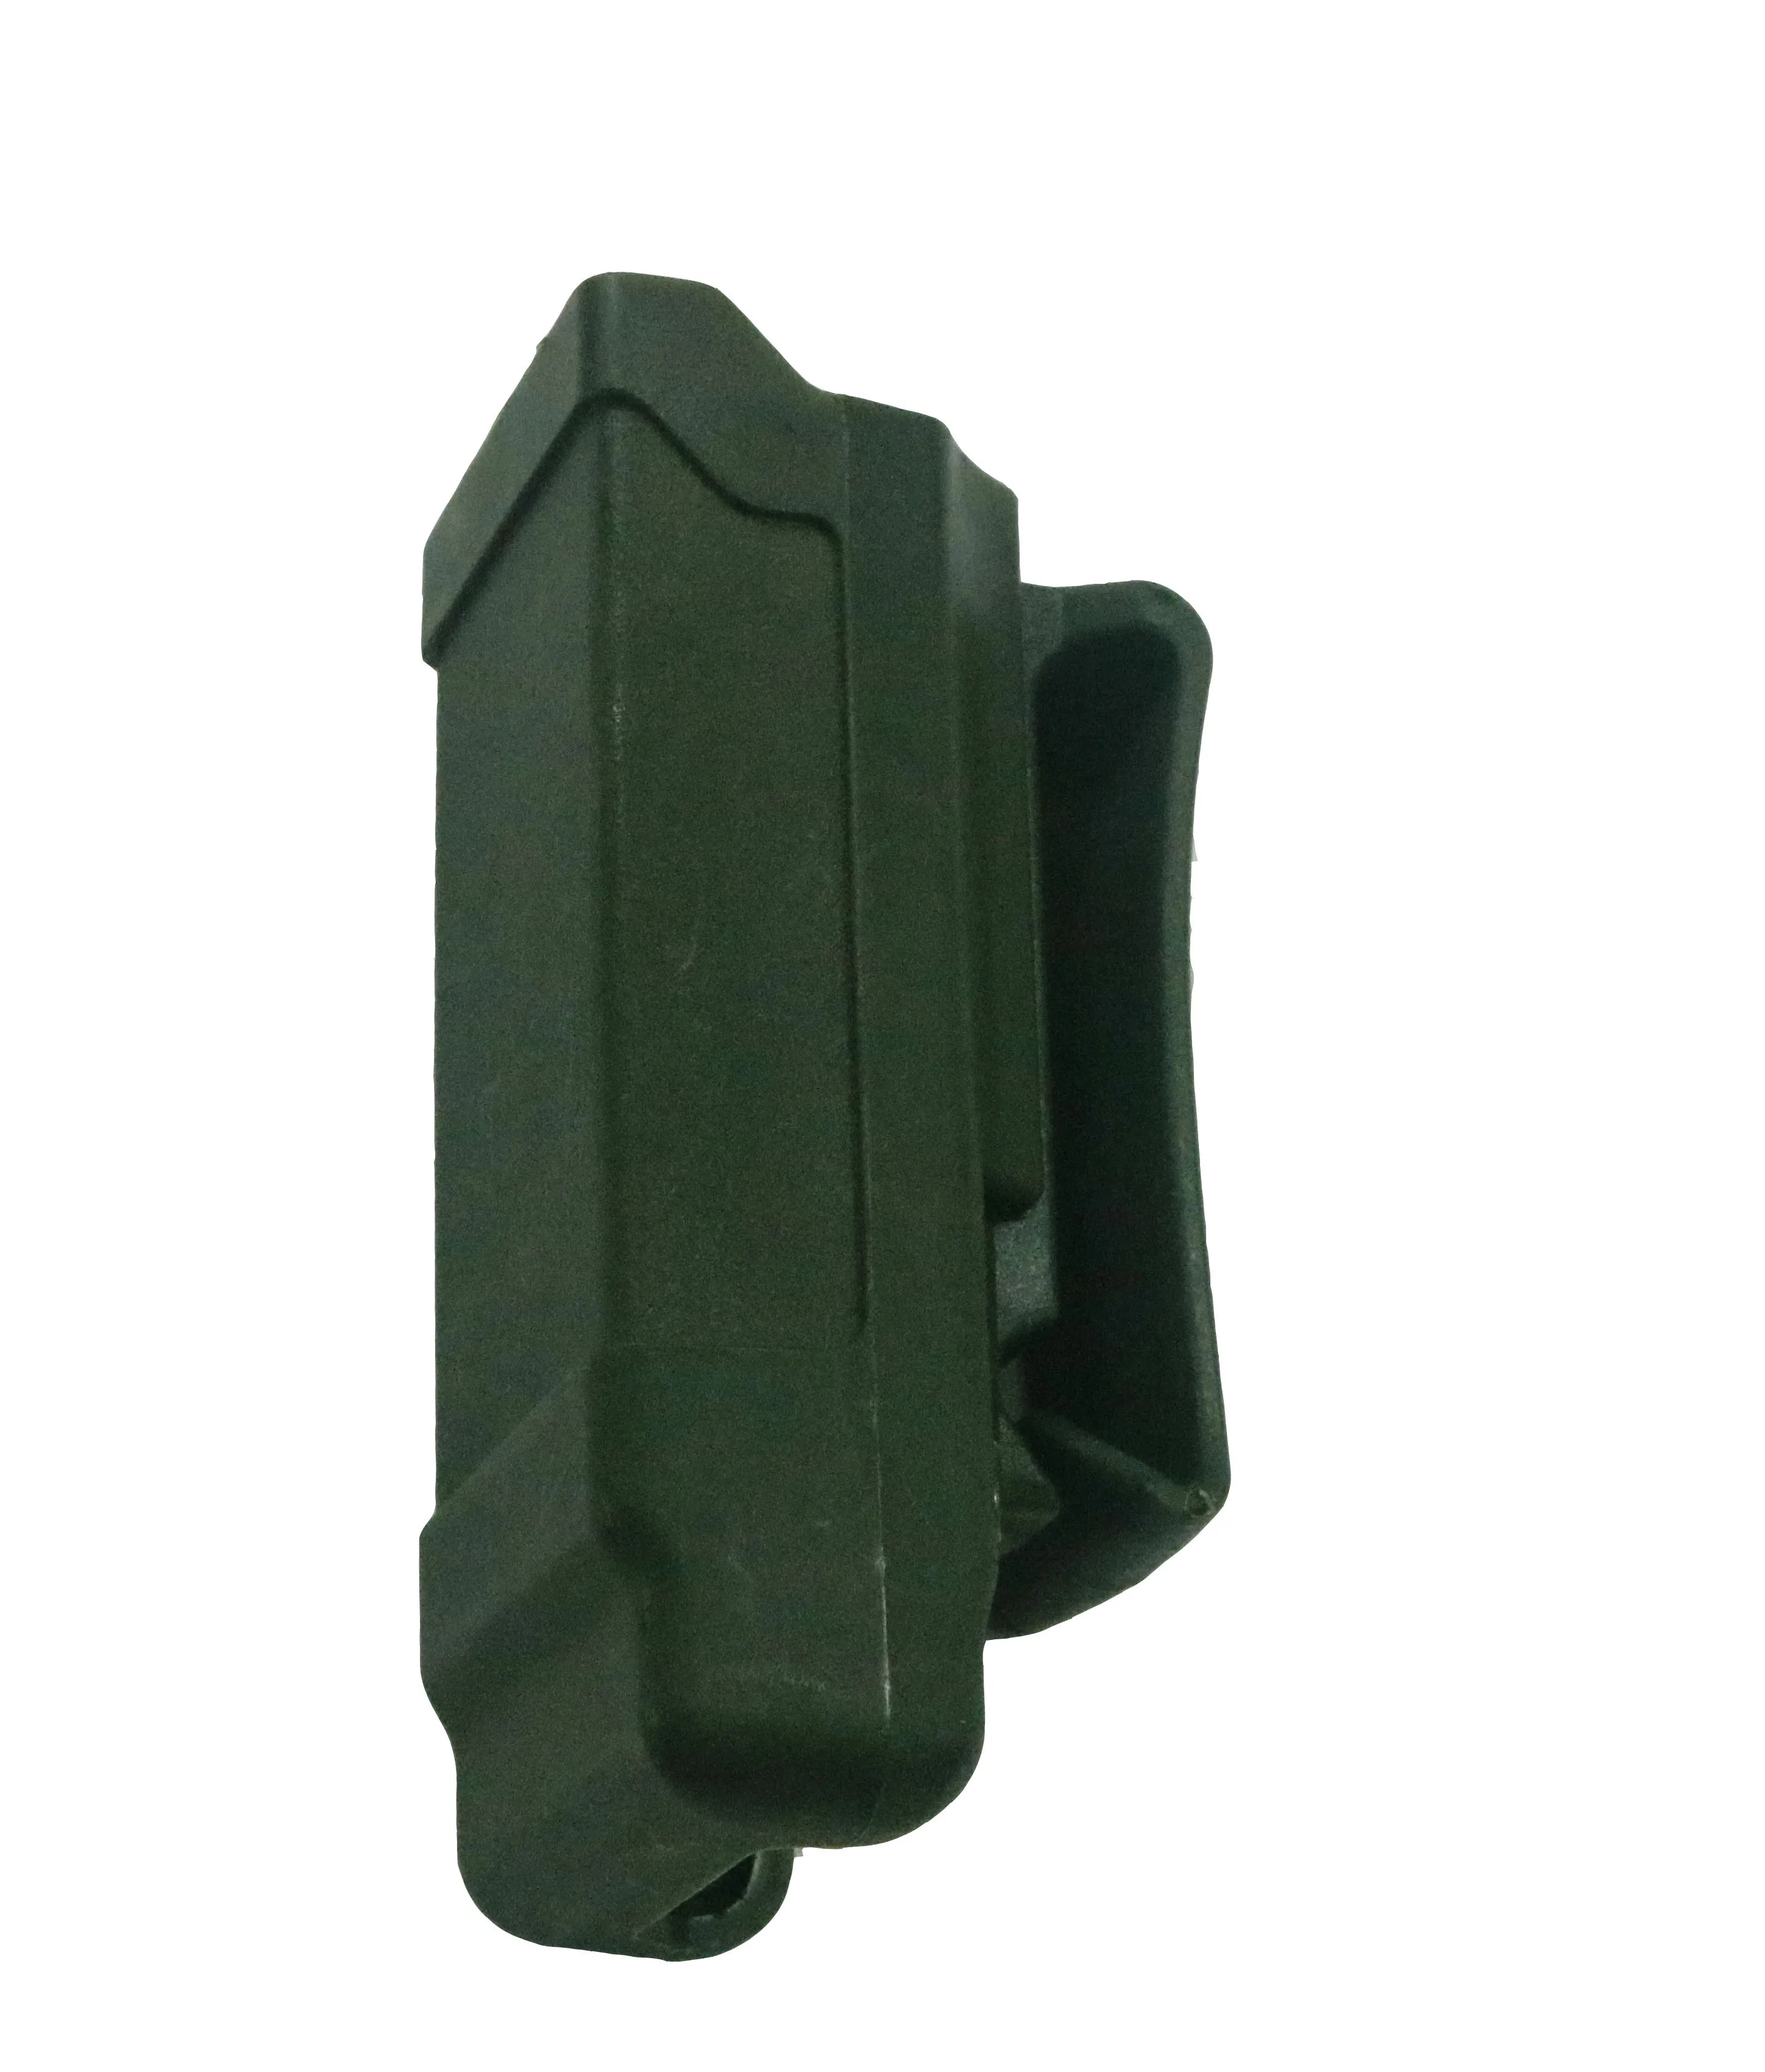 Тактический страйкбол CQC подсумок перевозчик из углеродного волокна 9 мм до. 45 калибра для GL Colt SP226 HK USP принадлежности для охотничьего пистолета